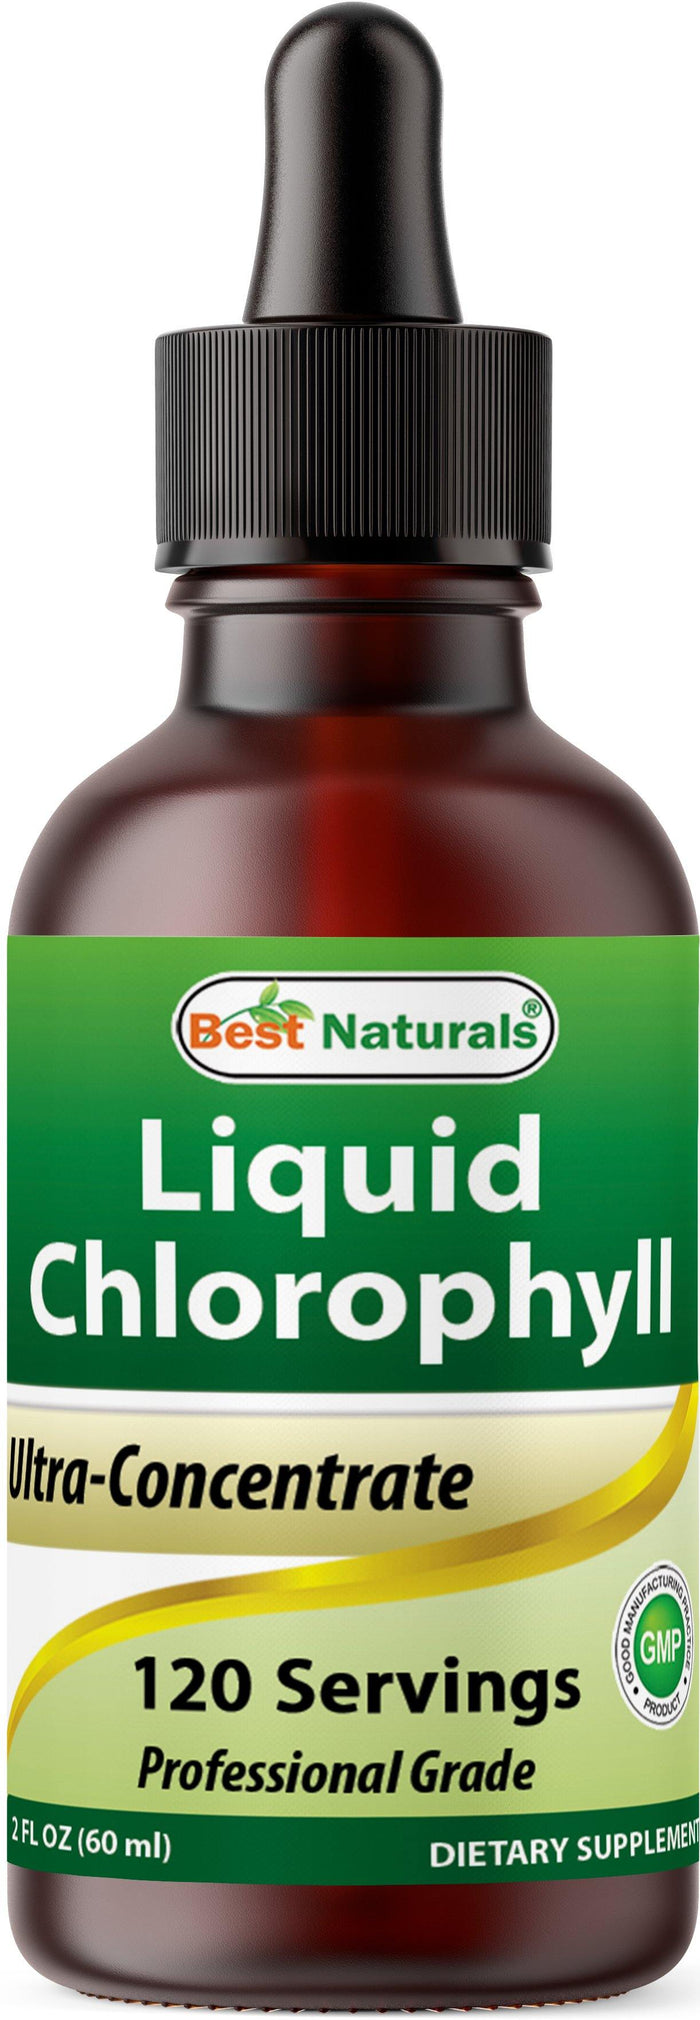 Best Naturals Liquid Chlorophyll Drops - 50 mg - 120 Servings Per Glass Bottle - 2 FL OZ